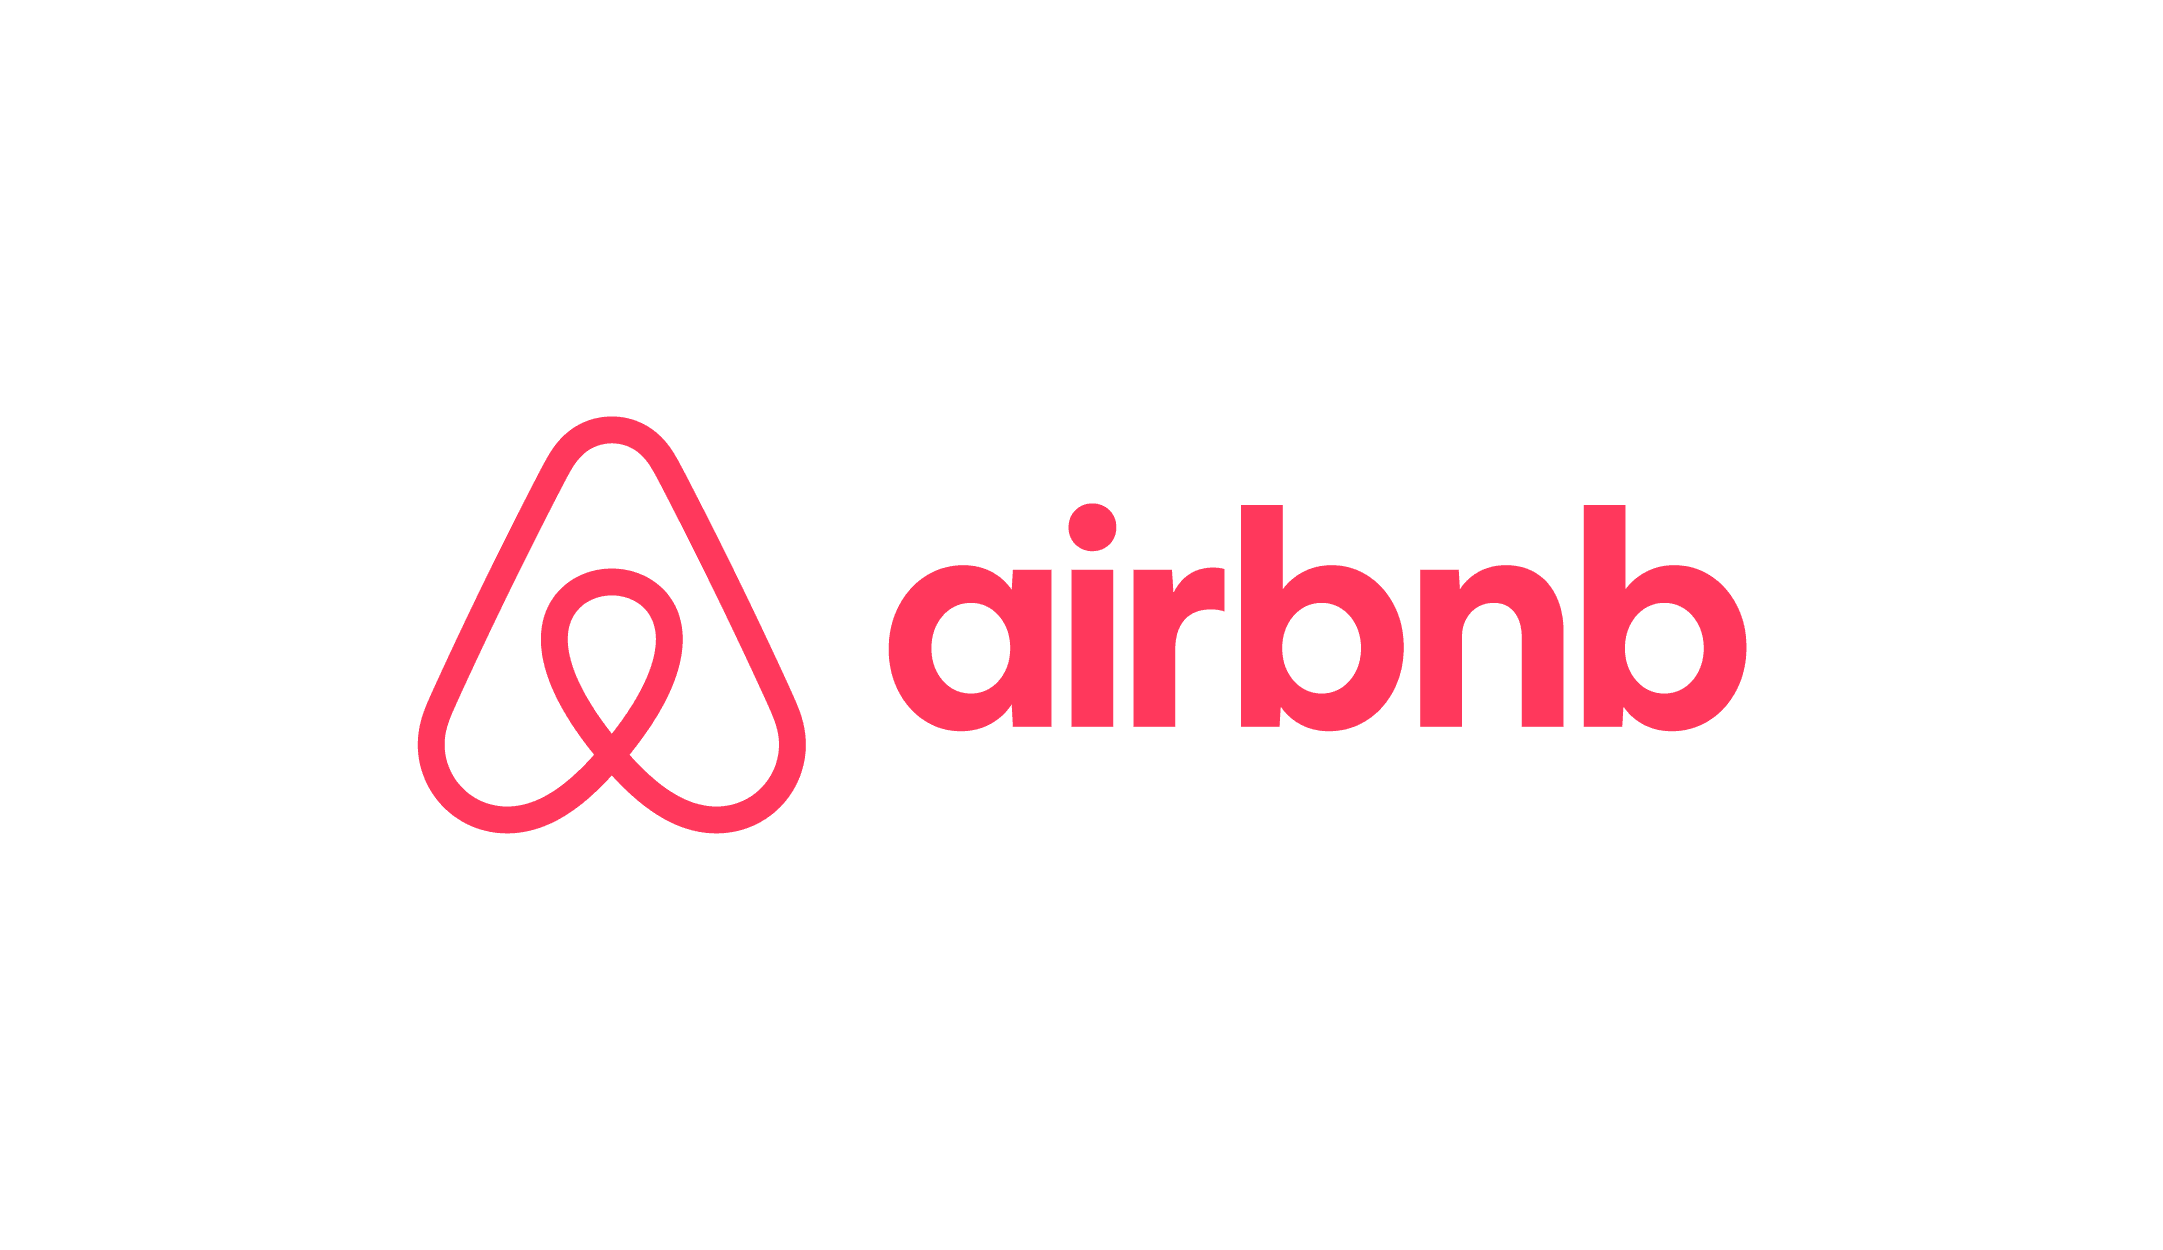 Airbnb Horizontal RGB 2019 |